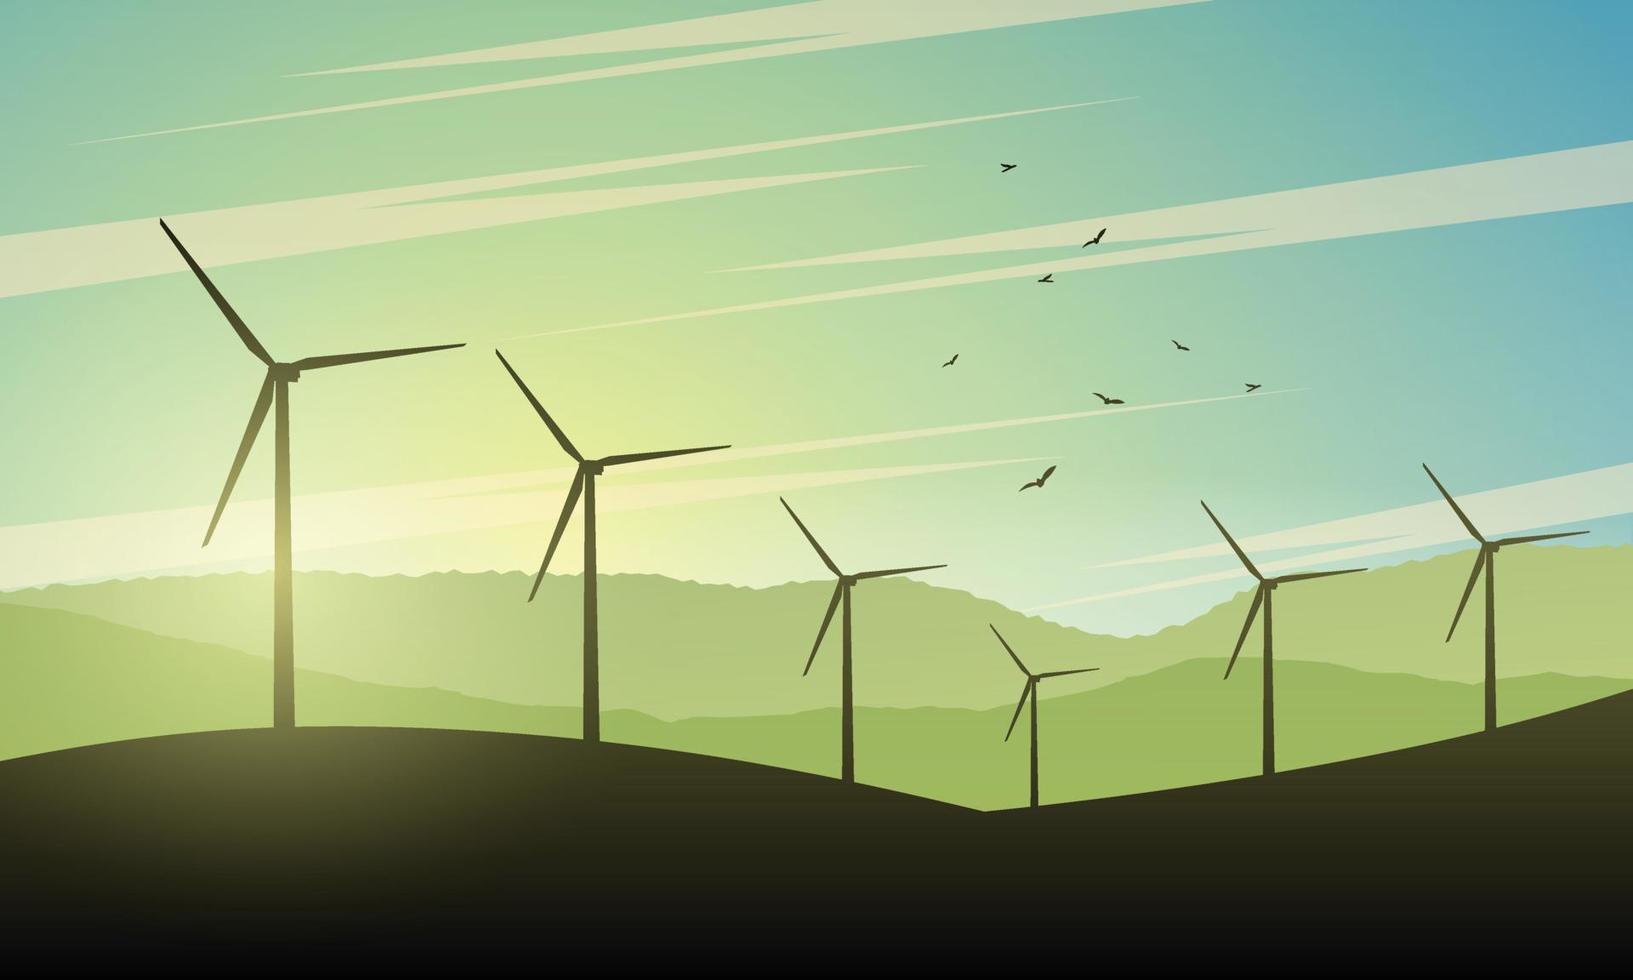 schön Landschaft Illustration mit Wind Turbinen beim Sonnenuntergang. Grün Leistung von Zukunft. Energie Konzept Hintergrund mit Wind Turbine. vektor